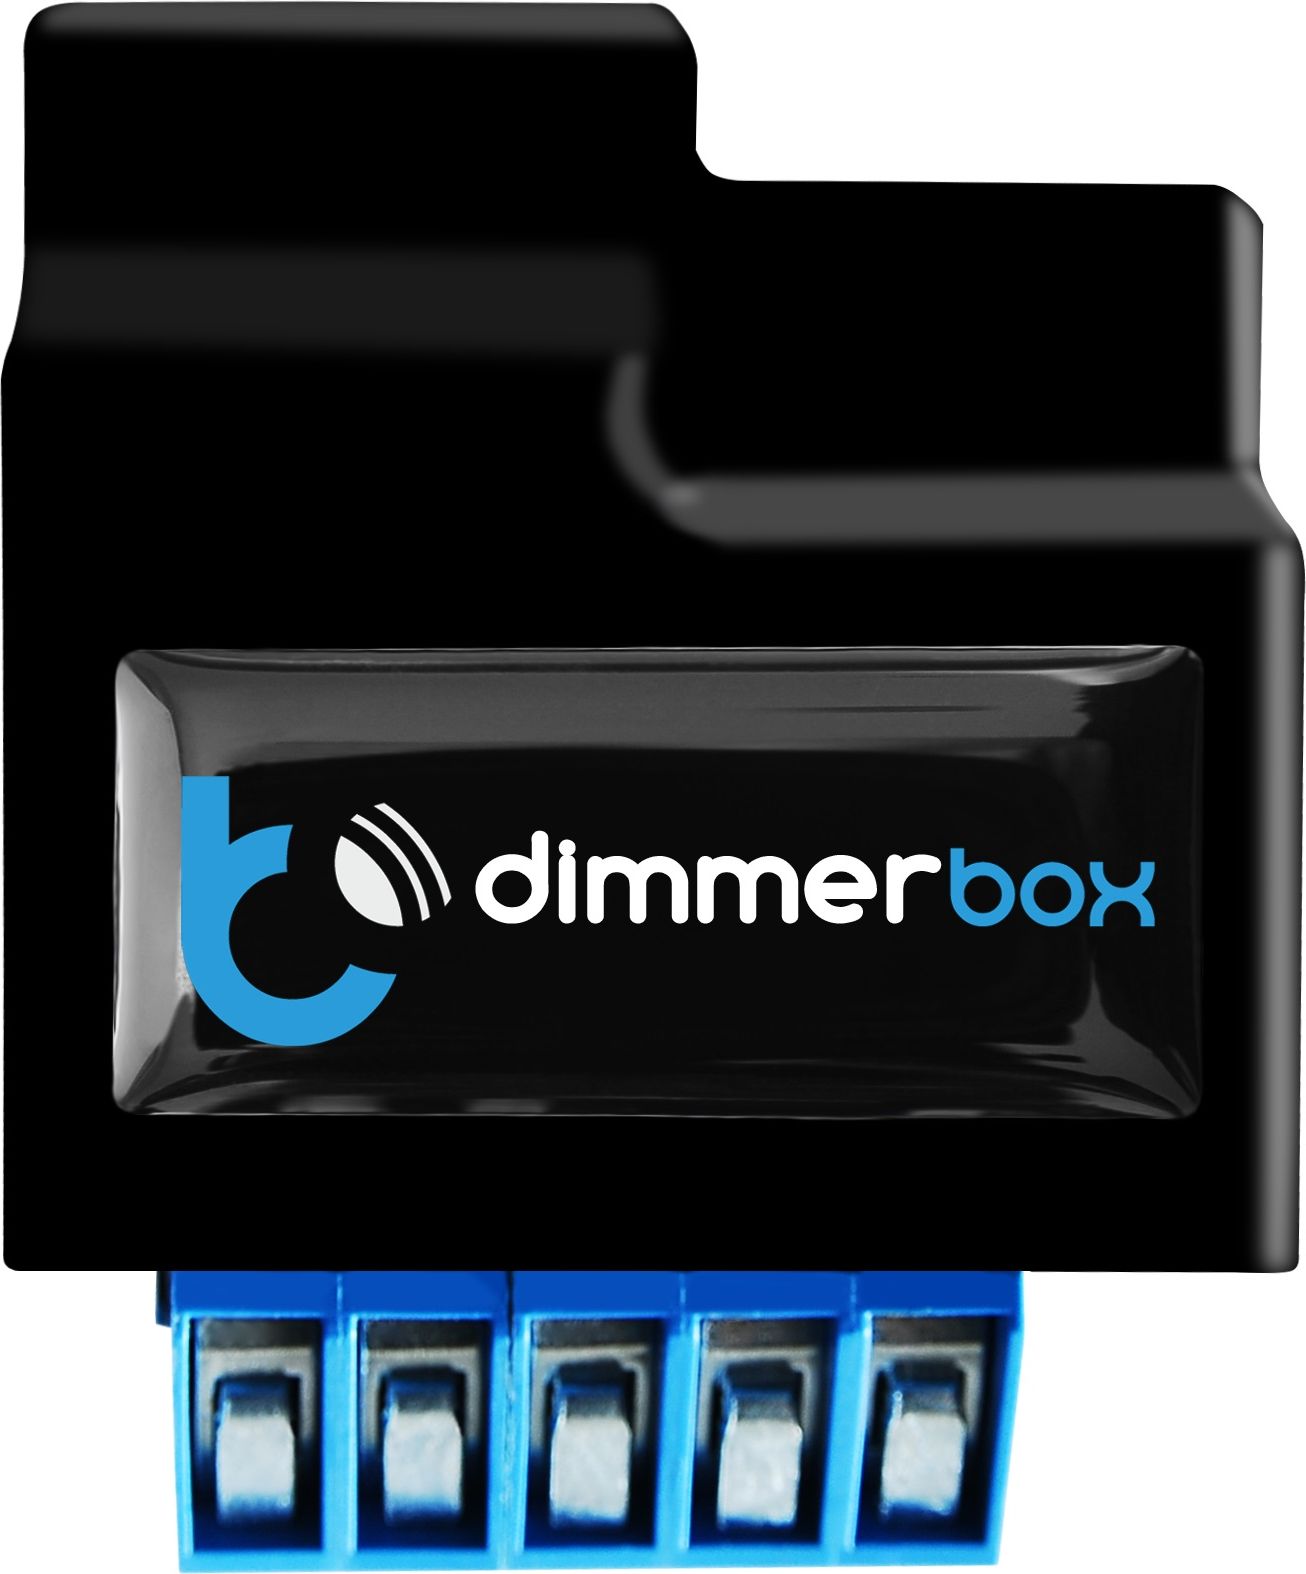 Blebox DimmerBox sciemniacz WiFi do zrodel swiatla 230V sterowany z aplikacji Dimmerbox (5900168580039)